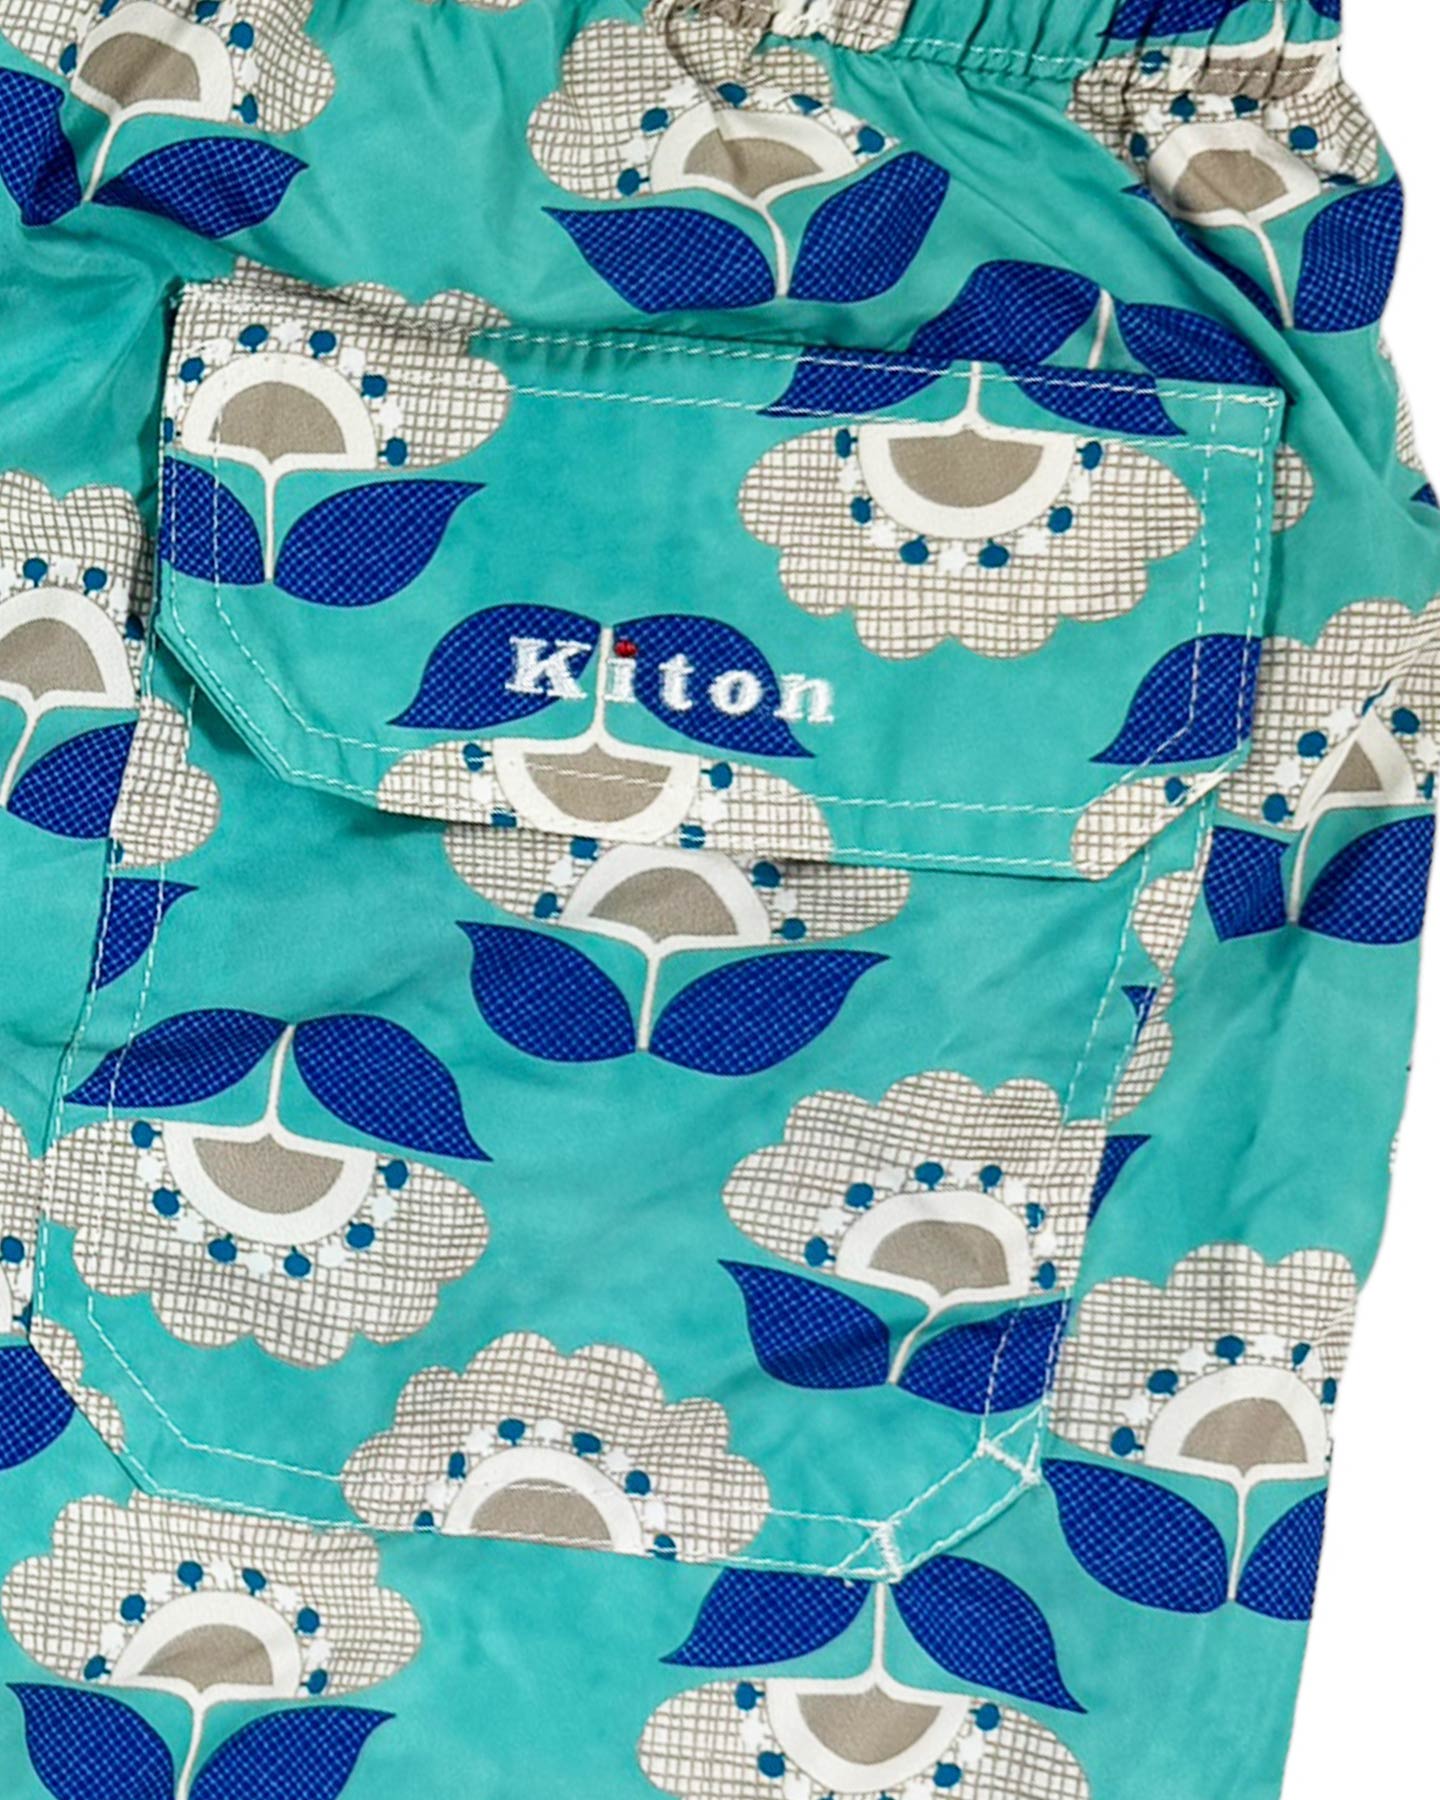 Kiton Swim Shorts L Seafoam Royal Blue Floral 